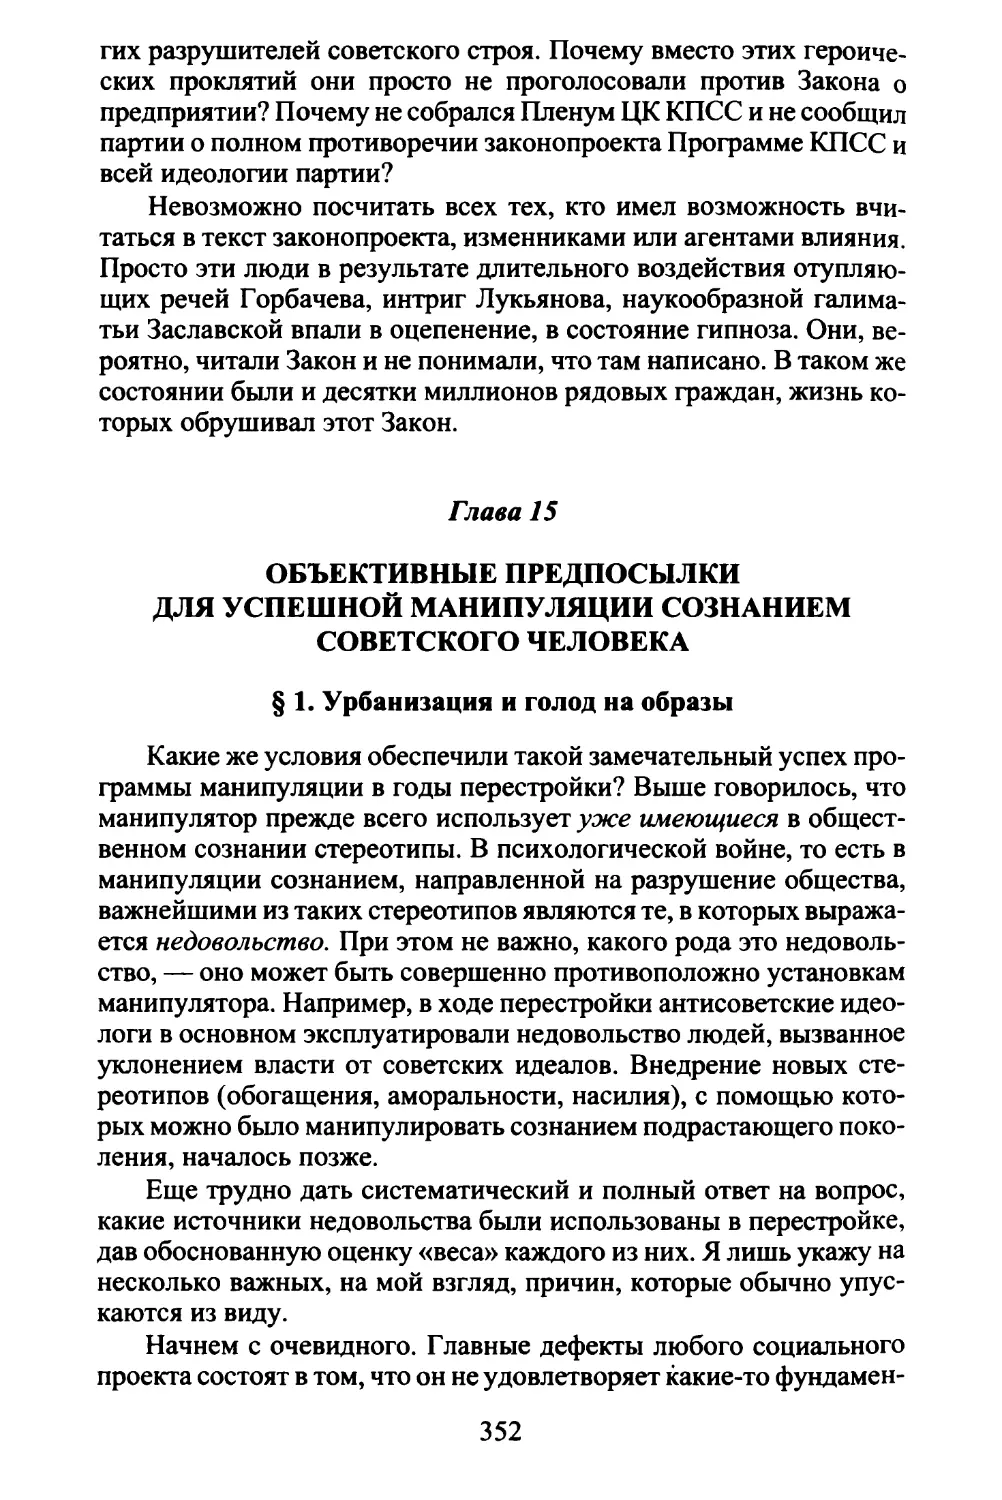 Глава 15. Объективные предпосылки для успешной манипуляции сознанием советского человека